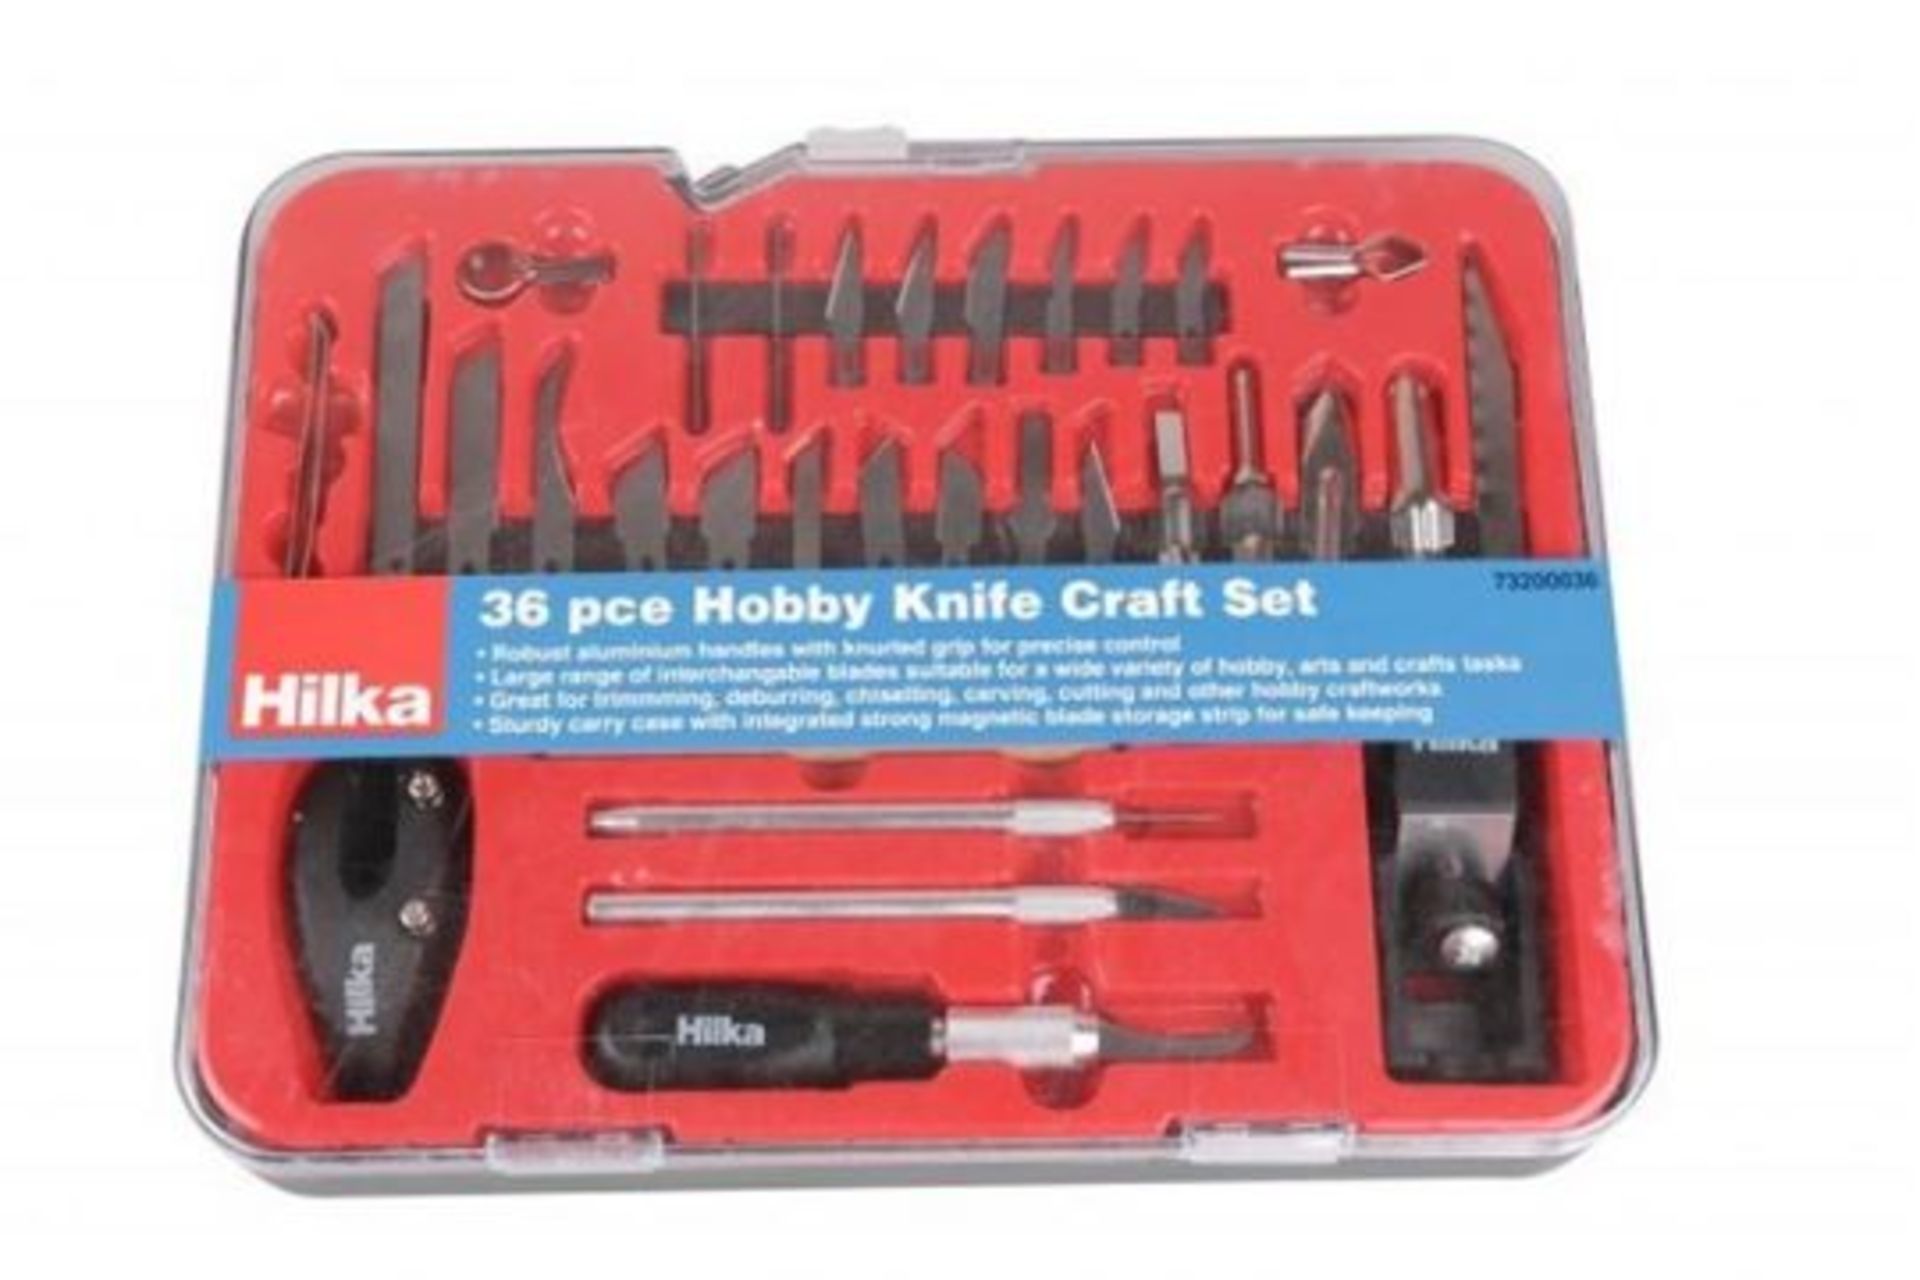 RRP £20.99 - New Hilka 36 pce Hobby Knife